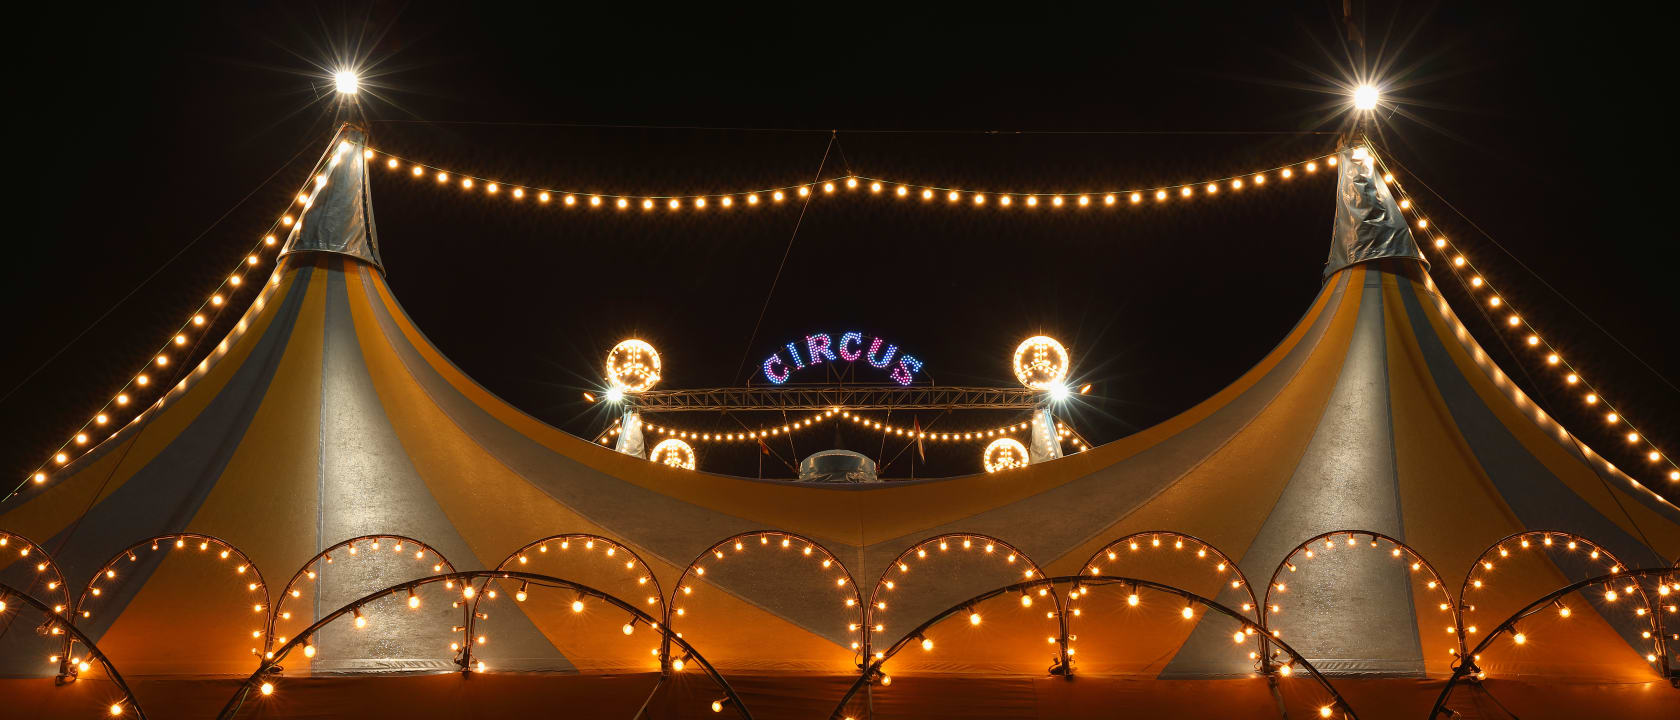 Venardos Circus